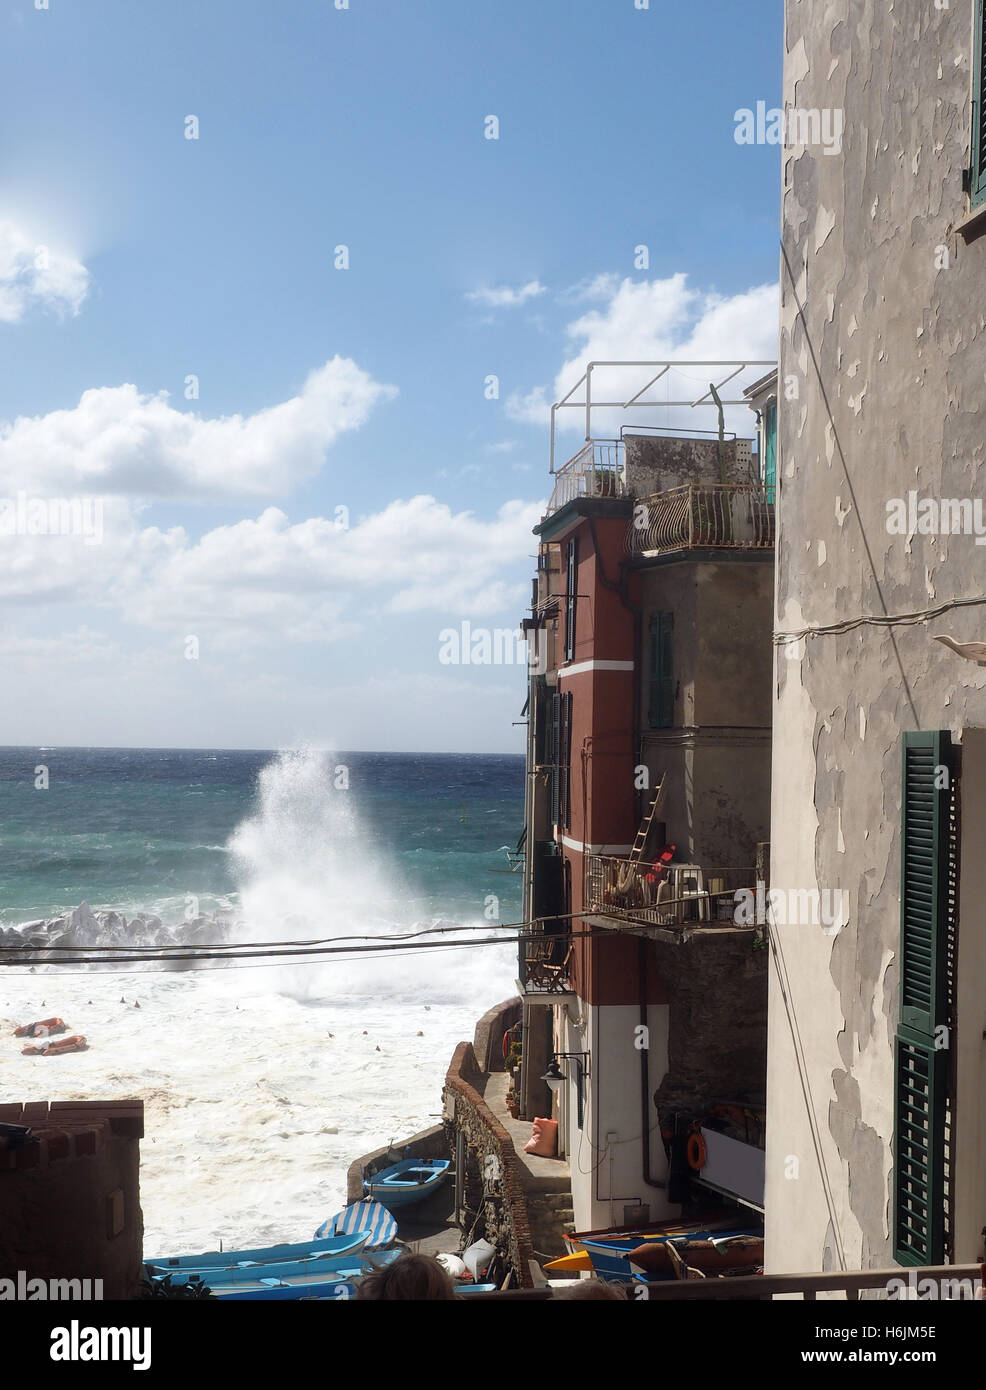 waves breaking on protective wall Riomaggiore Cinque Terre Italy Italian Riviera Stock Photo